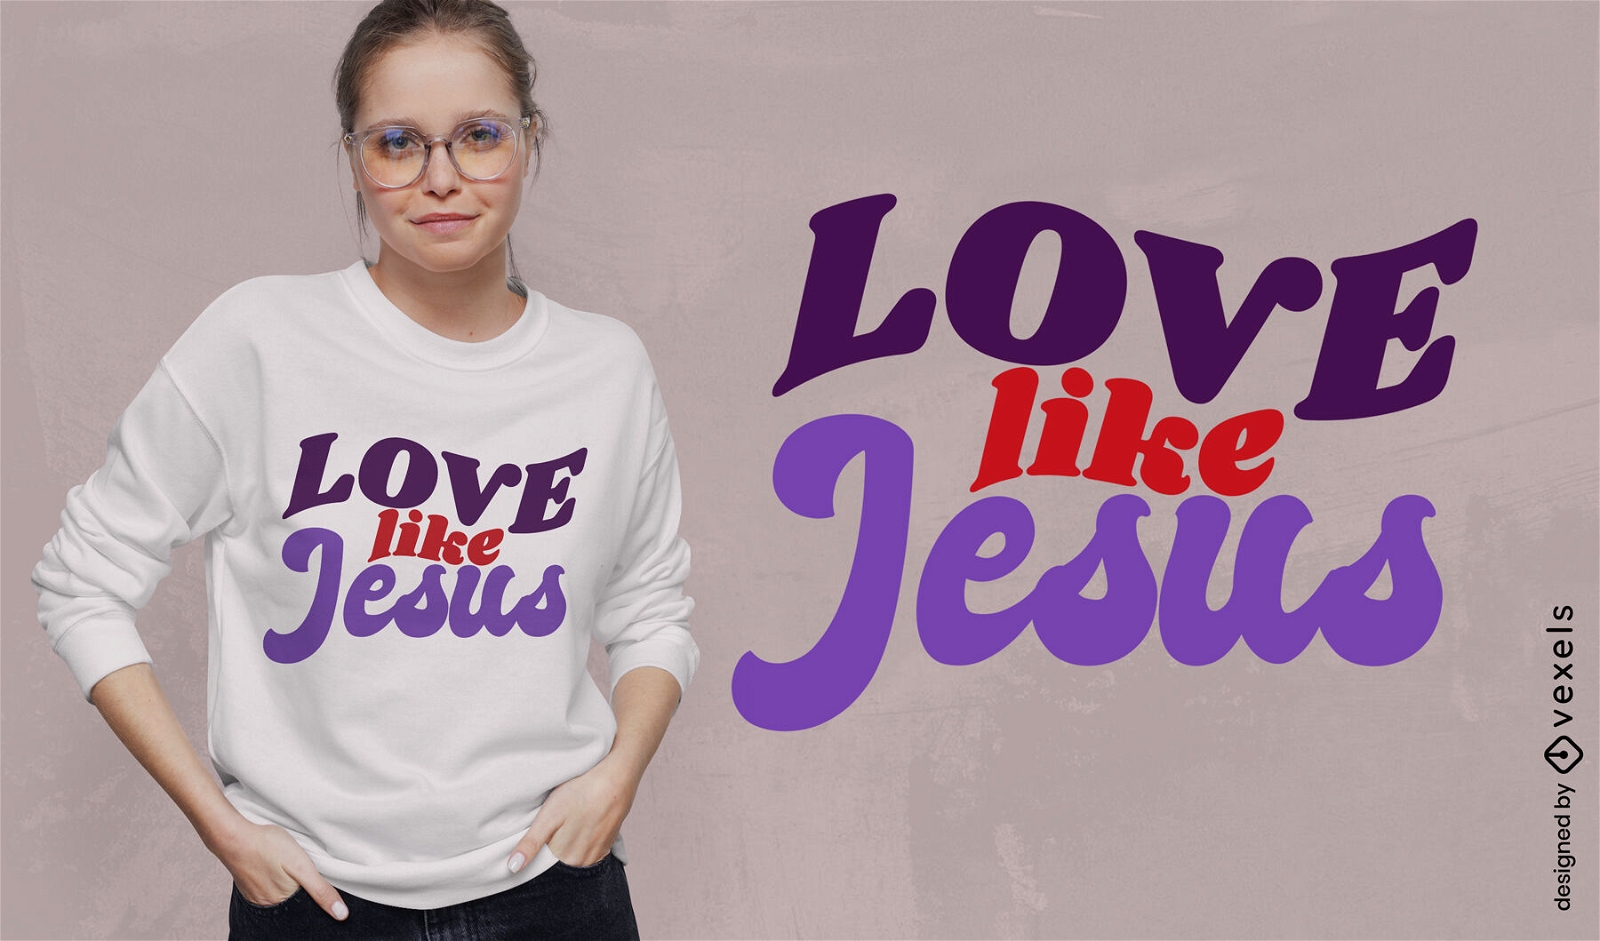 Liebe wie Jesus T-Shirt-Design